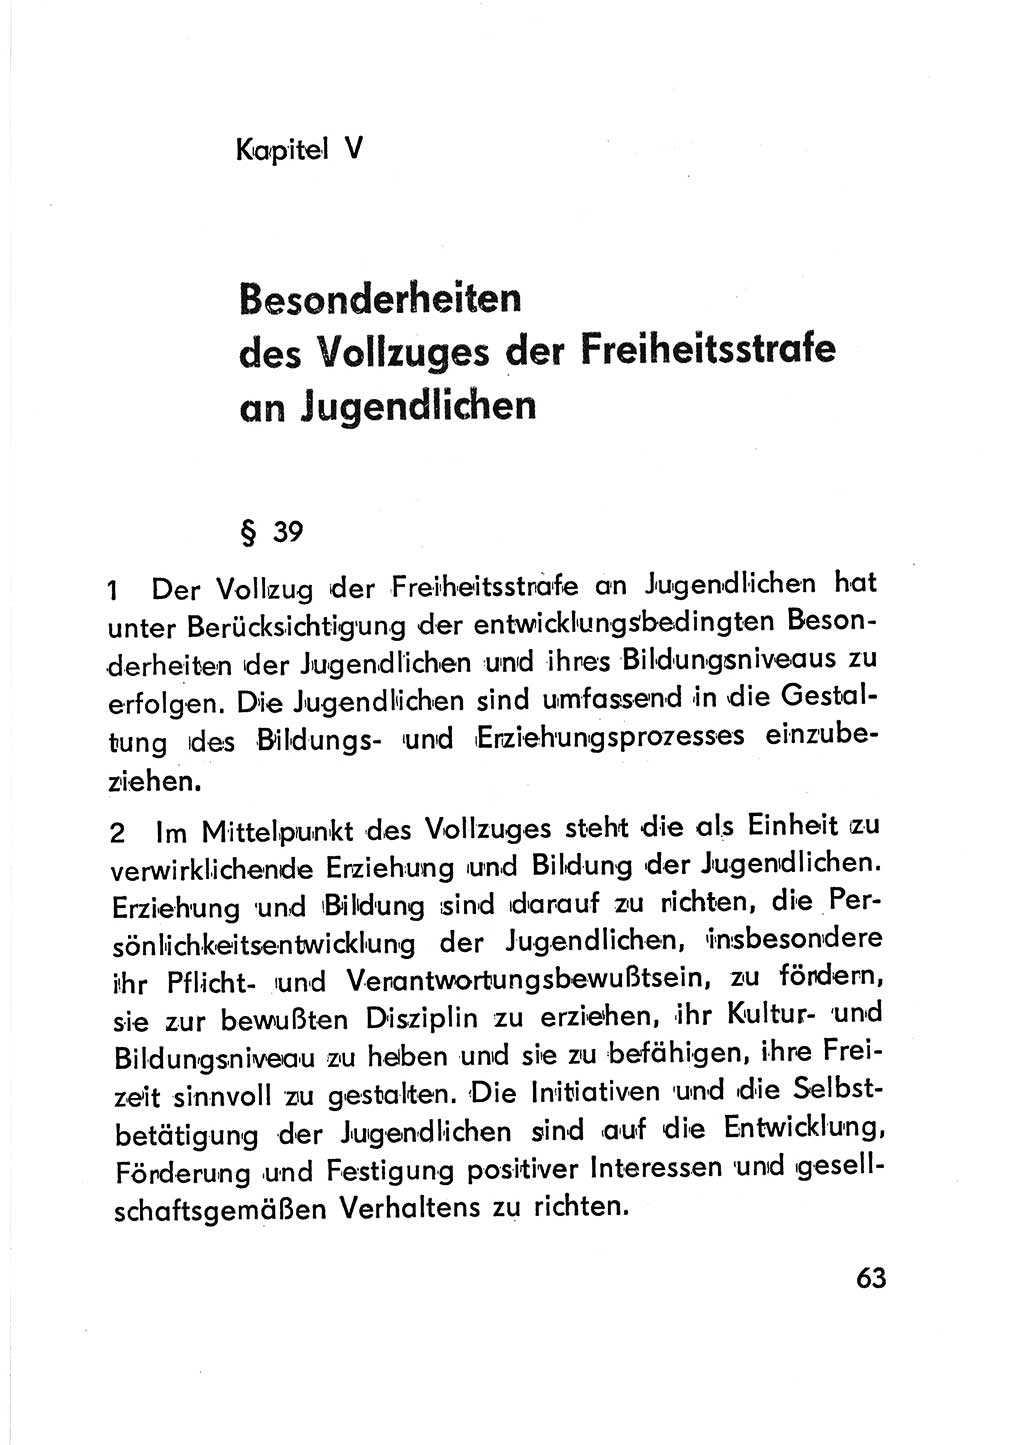 Gesetz über den Vollzug der Strafen mit Freiheitsentzug (Strafvollzugsgesetz) - StVG - [Deutsche Demokratische Republik (DDR)] 1977, Seite 63 (StVG DDR 1977, S. 63)